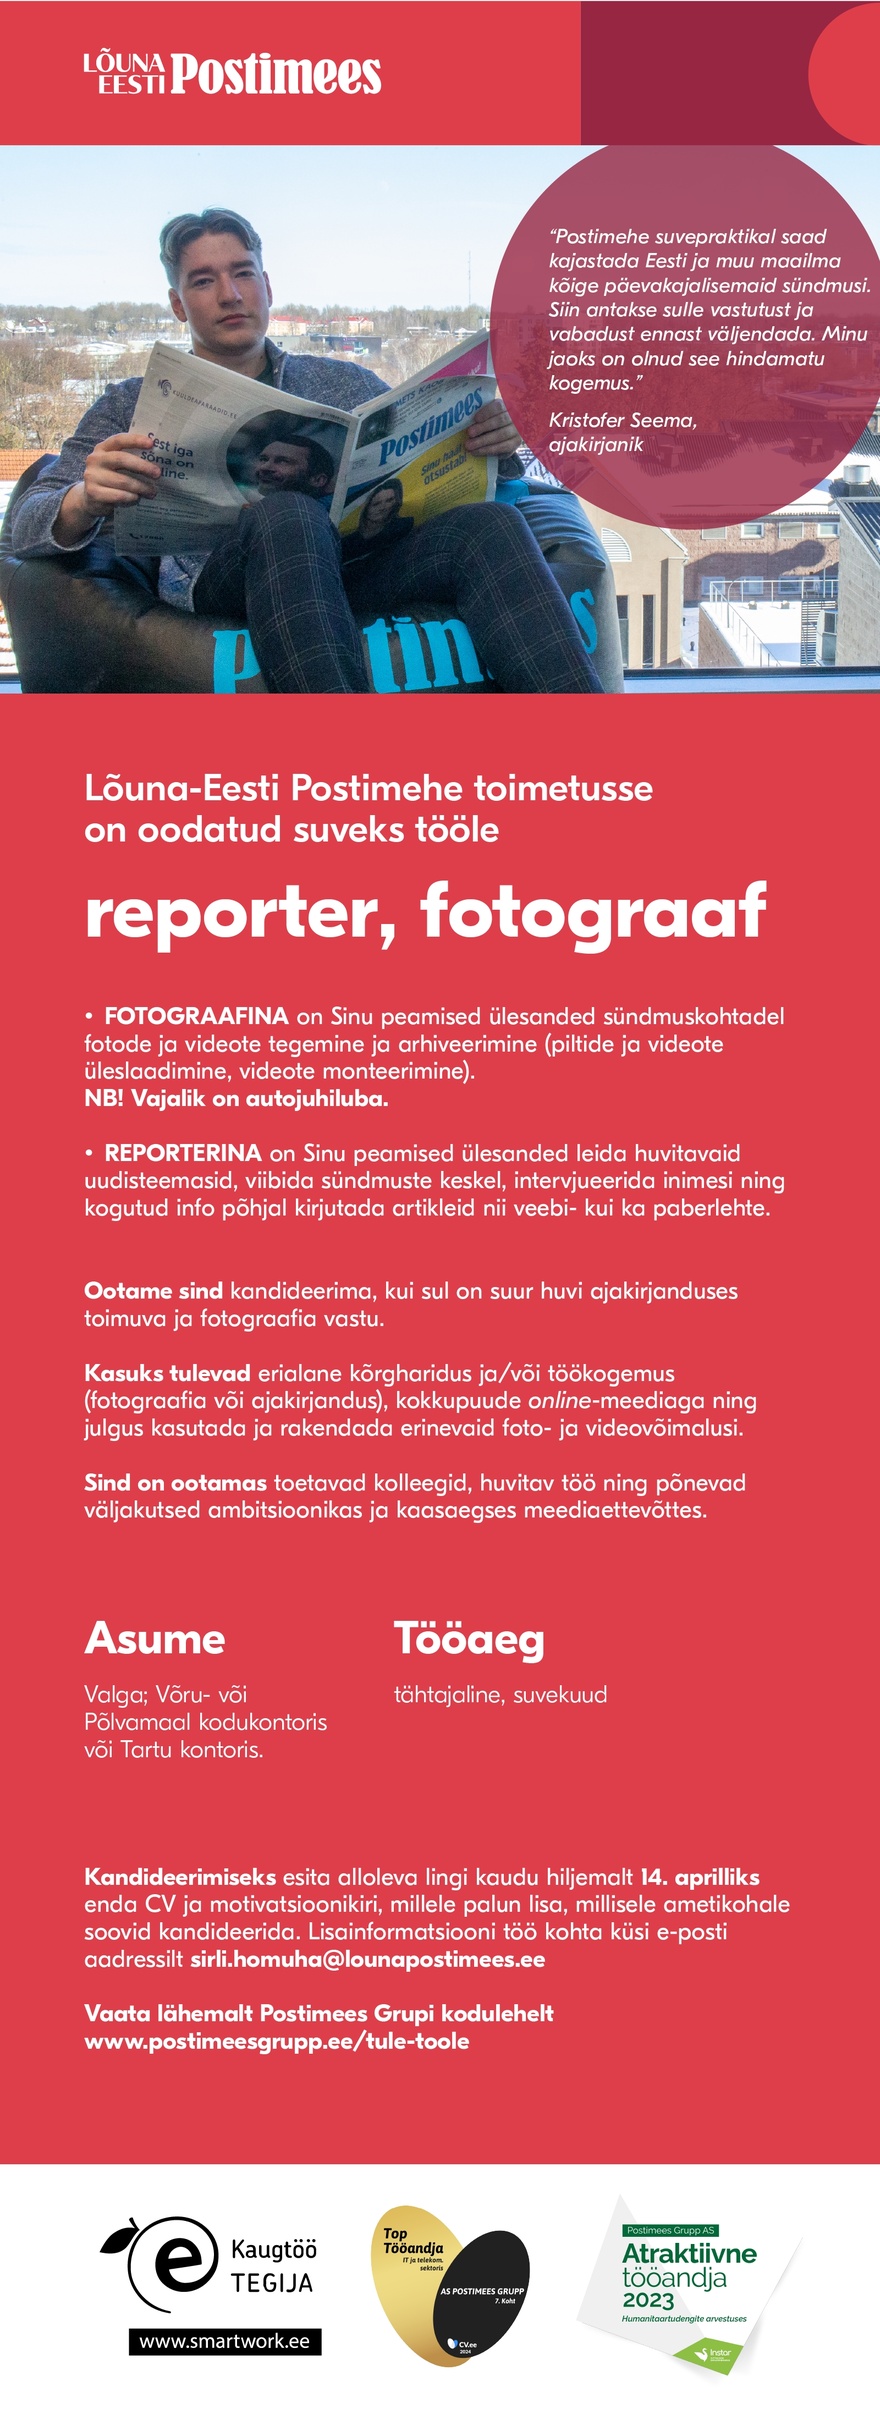 AS Postimees Grupp Lõuna-Eesti Postimehe reporter ja fotograaf (tähtajaline, suvekuud)